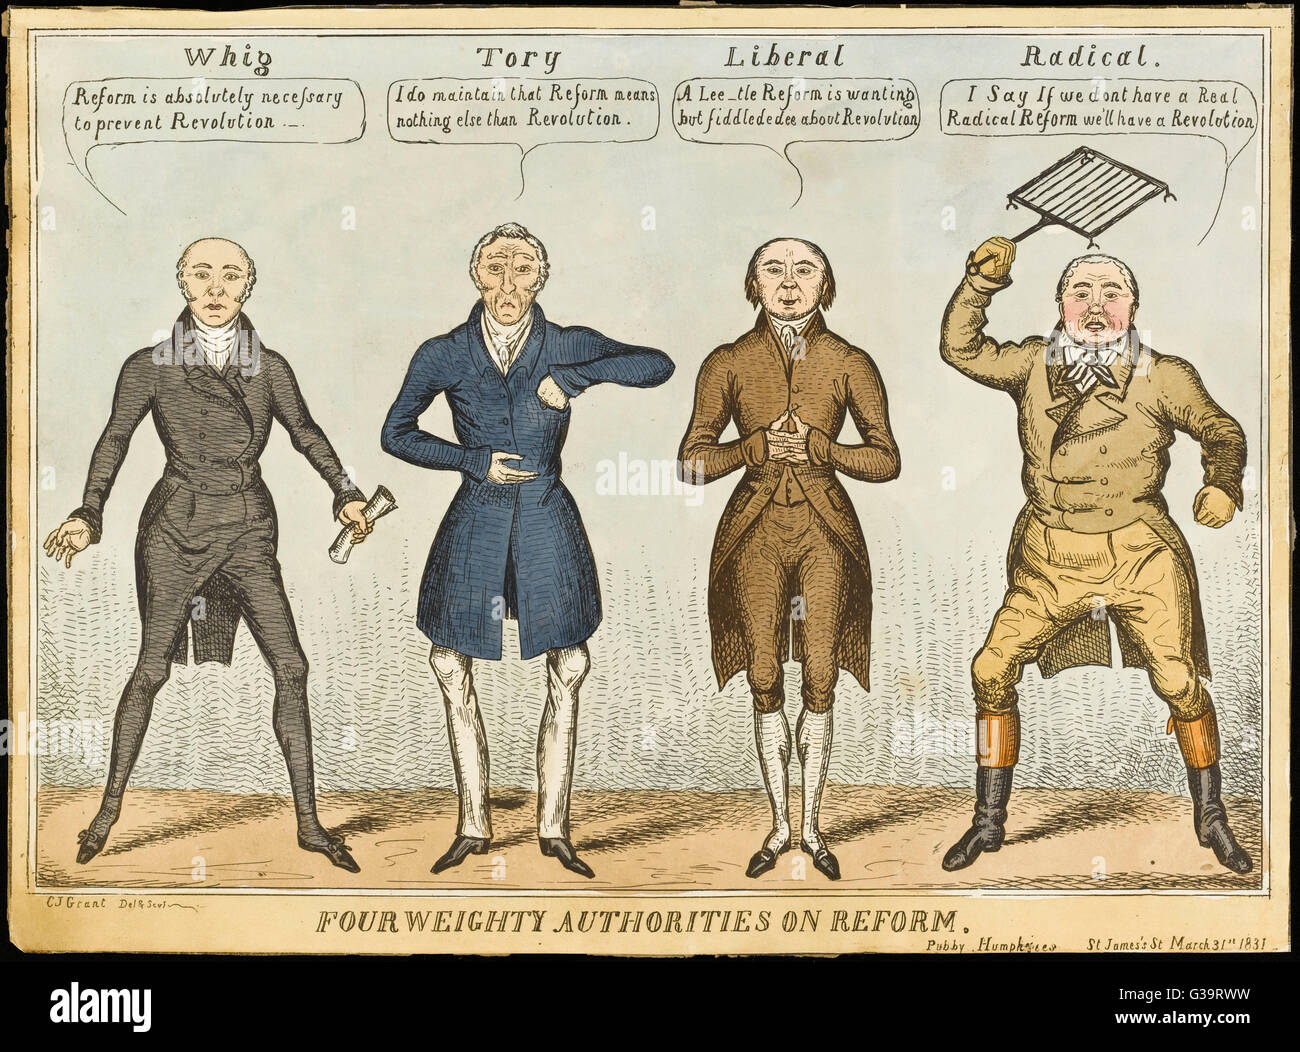 "Quattro poderosi competenti sulla riforma" gli atteggiamenti nei confronti del problema della riforma da lo spettro politico. Data: 1831 Foto Stock